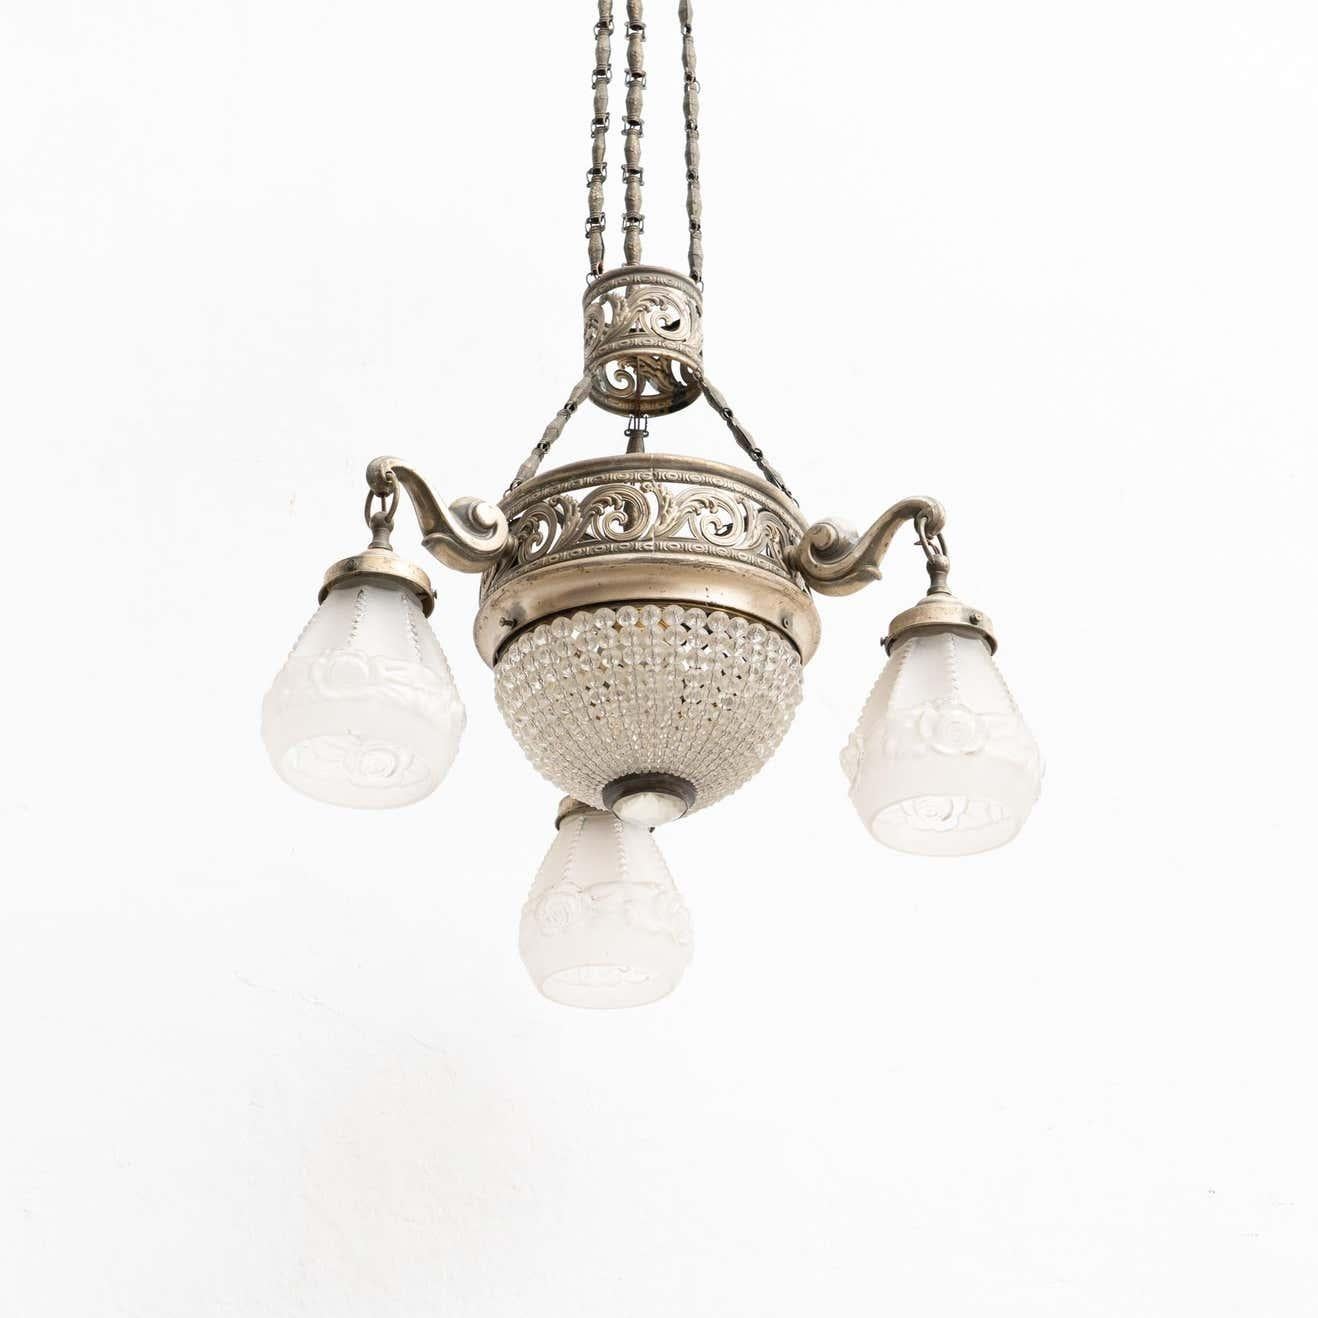 Lampe à suspension Art Déco française en métal et verre.

Par un fabricant inconnu de France, vers 1930.

En état d'origine, avec une usure mineure conforme à l'âge et à l'utilisation, préservant une belle patine.

Matériaux :
Verre
Métal.
 